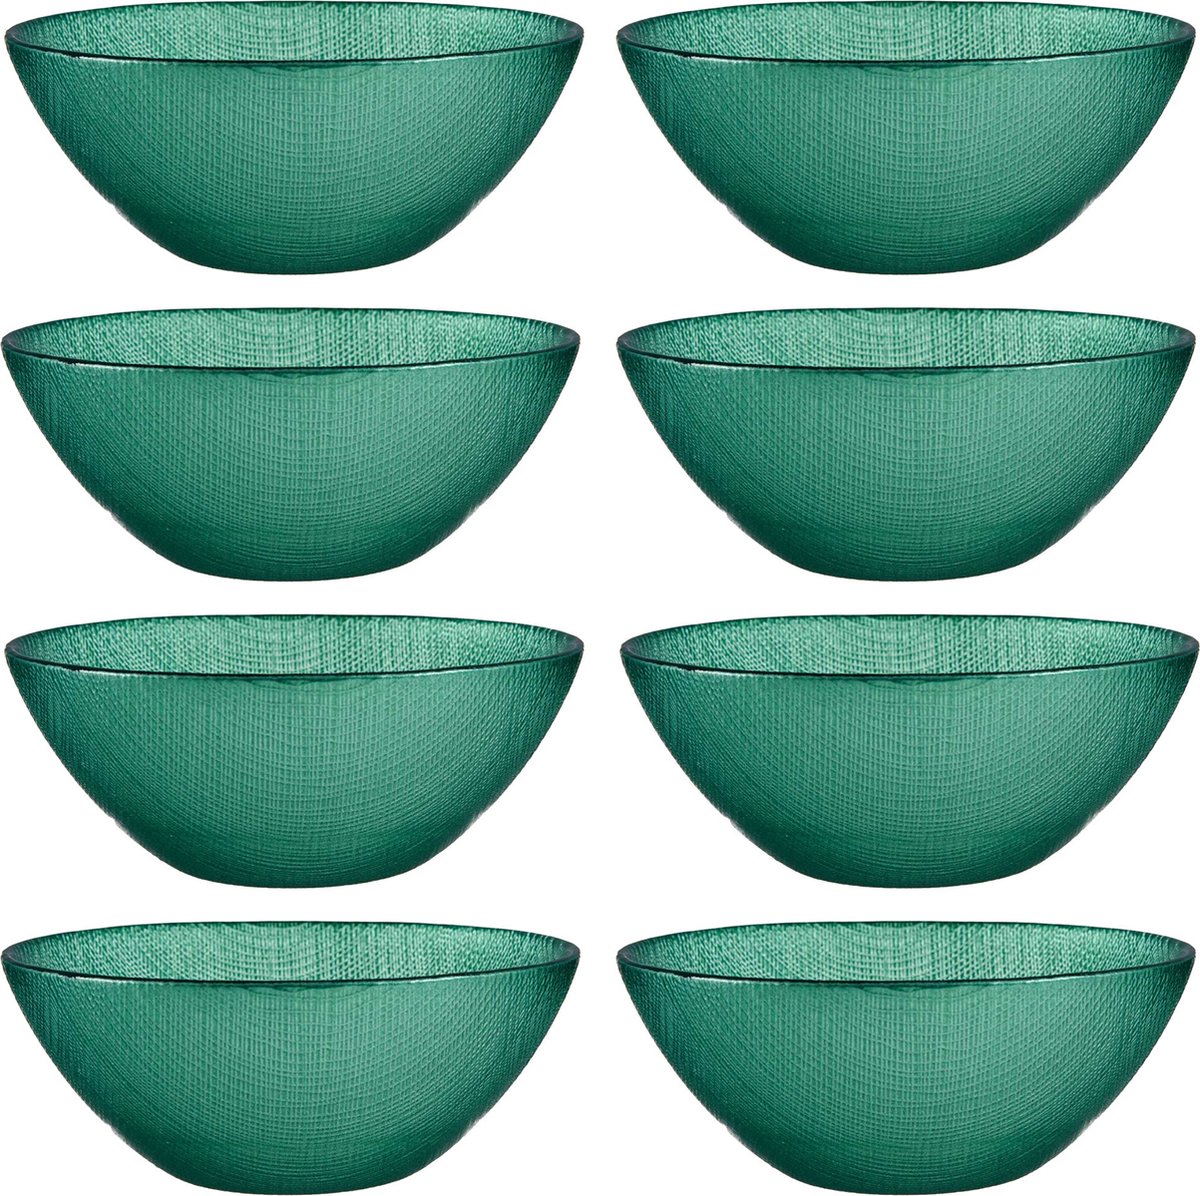 Vivalto Kommetjes/serveer schaaltjes/soepkommen - 8x - Murano - glas - D15 x H6 cm - groen - Stapelbaar